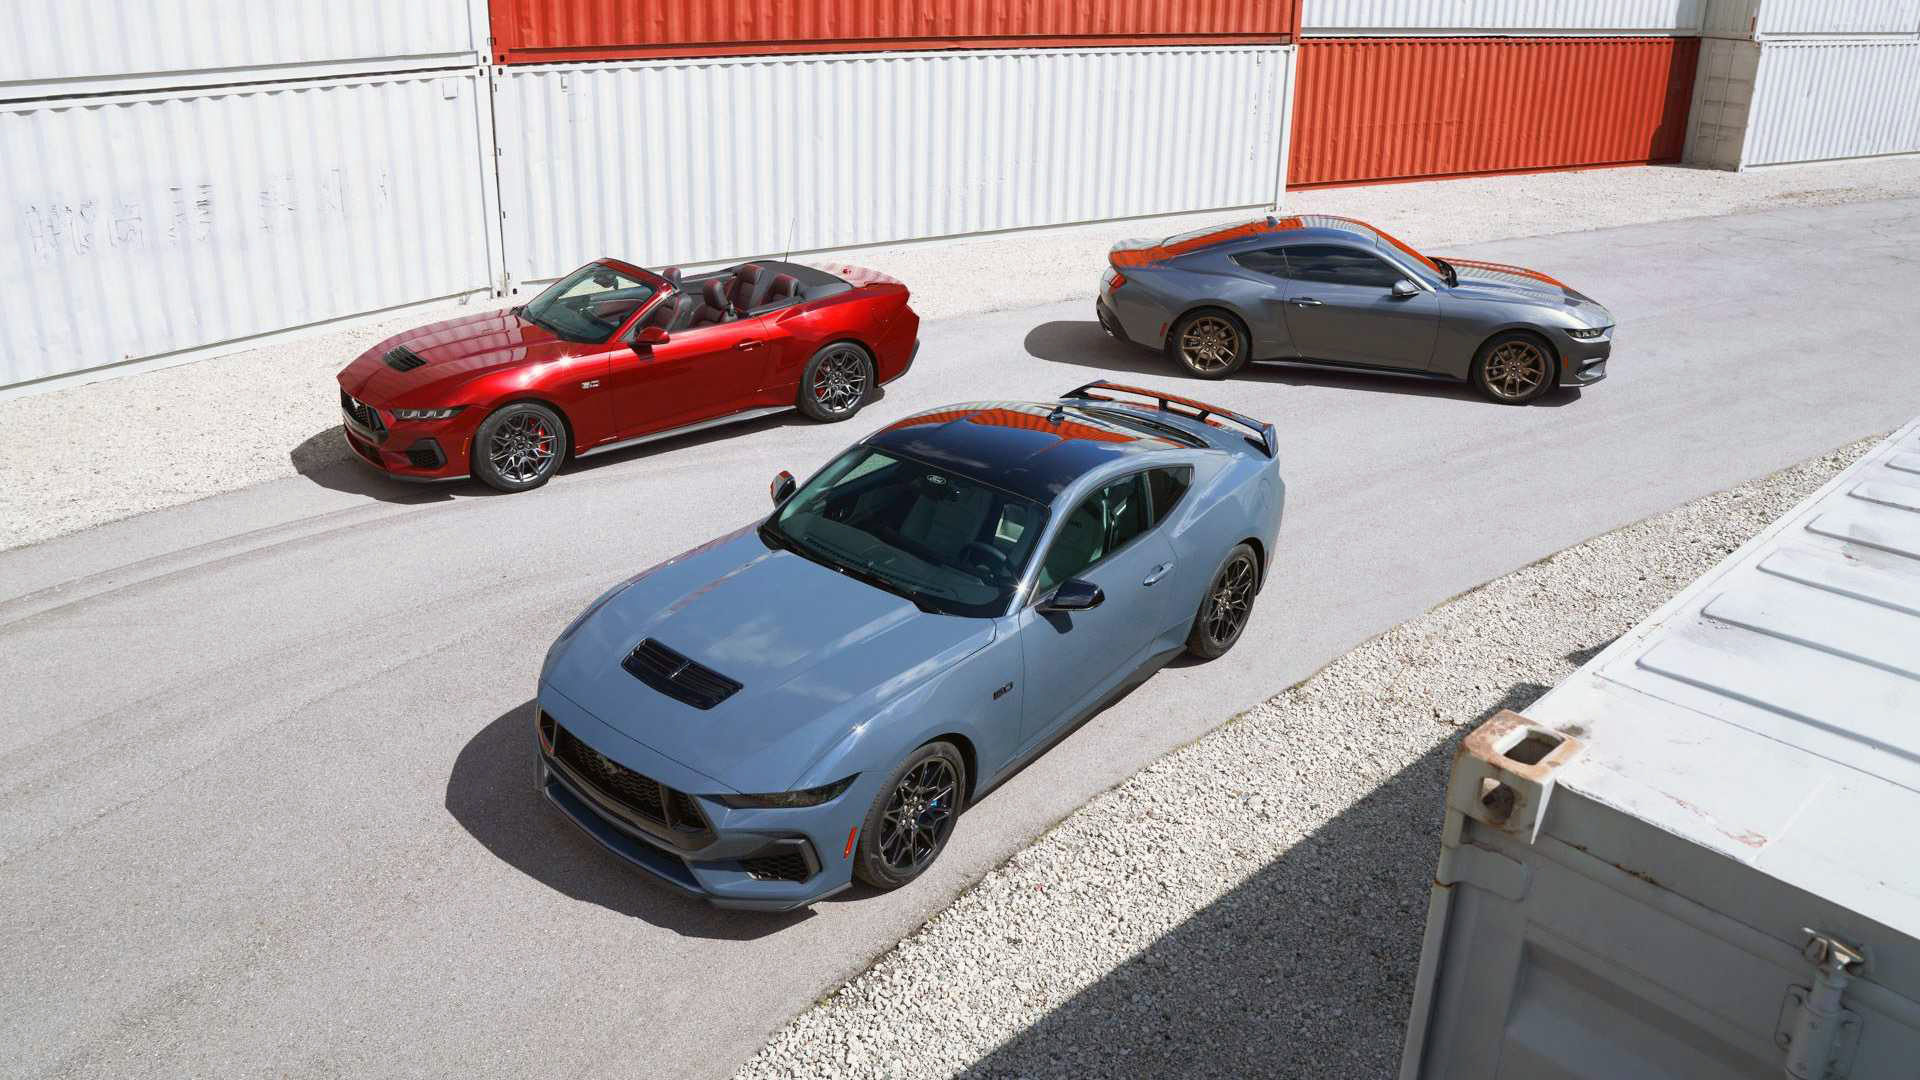 Tre copie della nuova Mustang.  Il motore 5 litri Coyote V8 e EcoBoost 4 cilindri cabriolet costituiscono la base della settima generazione